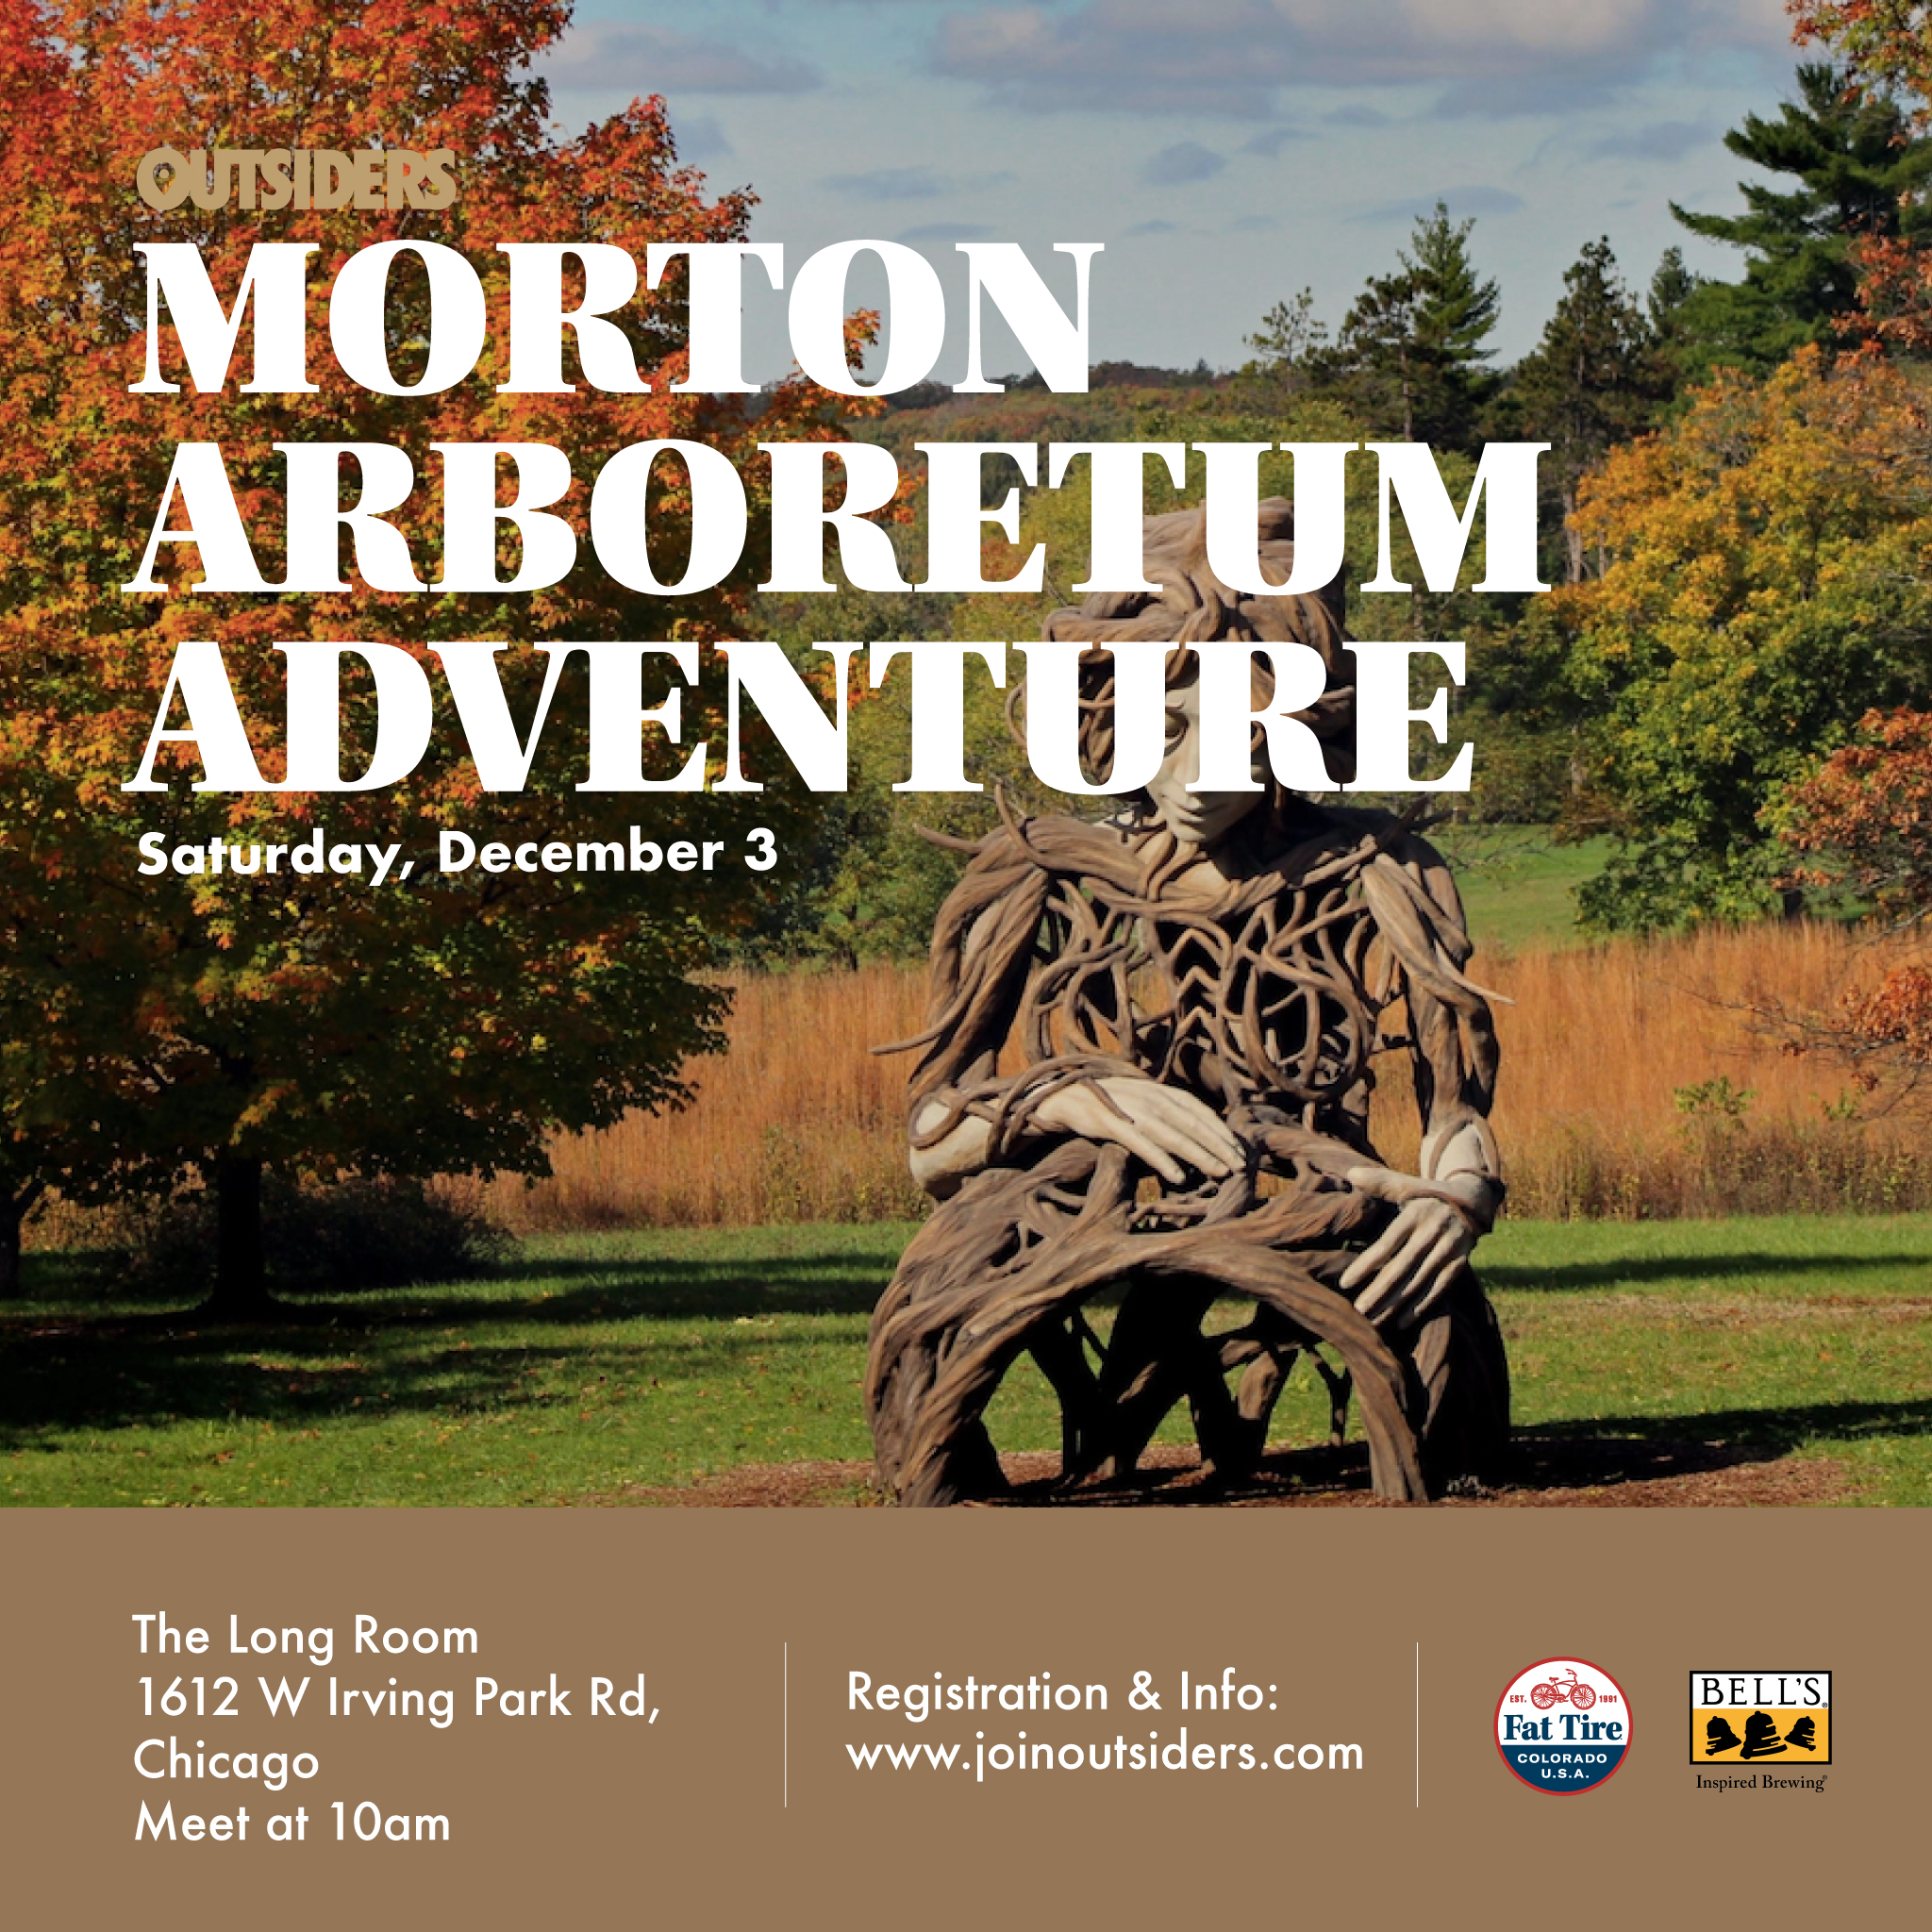 Morton Arboretum Adventure